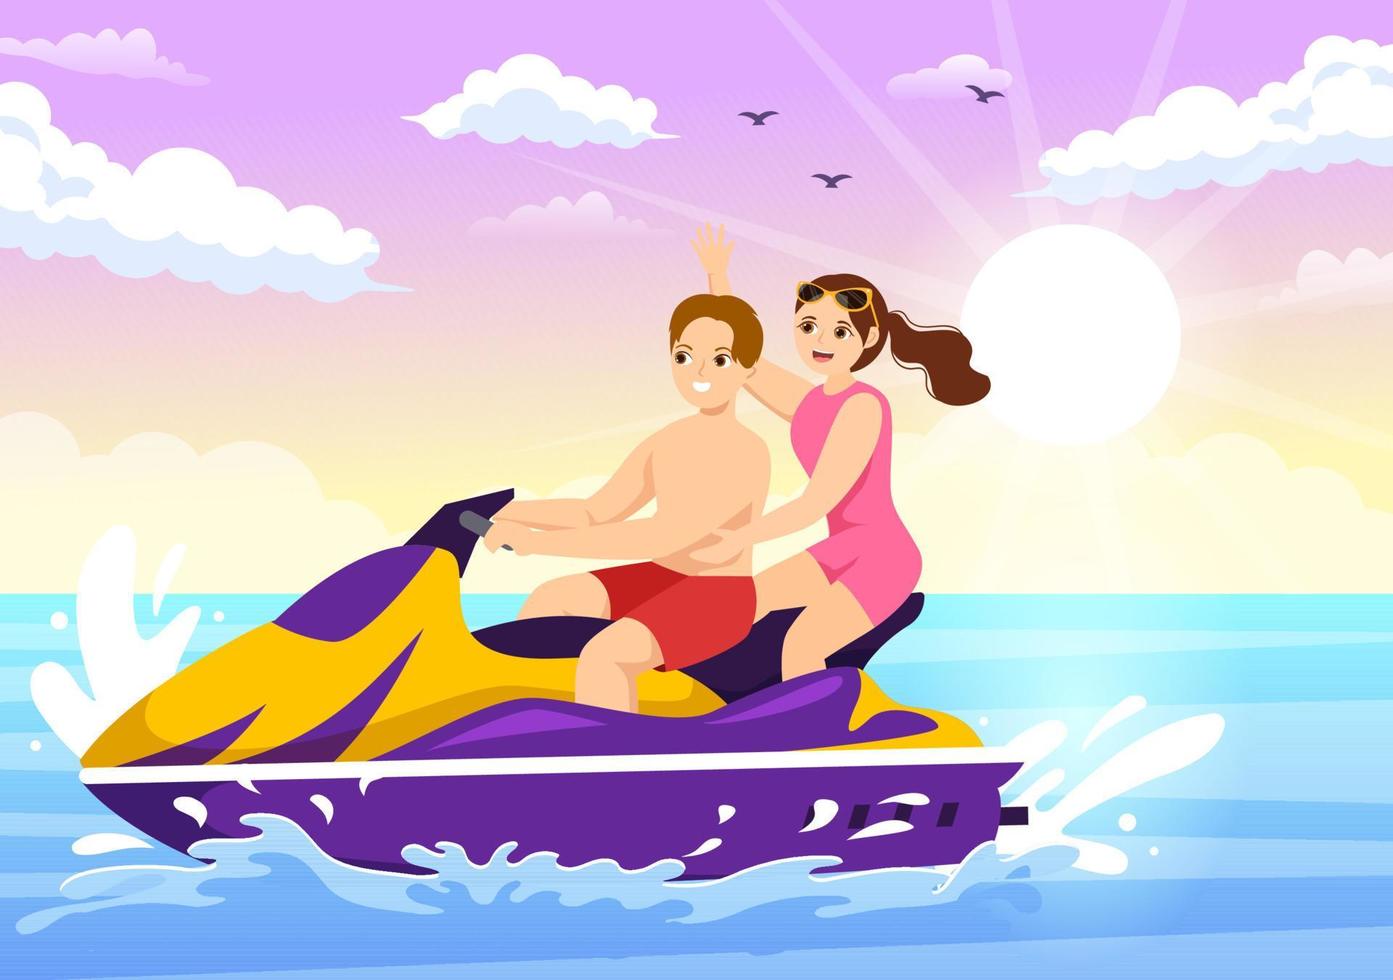 la gente viaja en moto acuática ilustración recreación de vacaciones de verano, deportes acuáticos extremos y actividad en la playa del resort en plantilla de caricatura plana dibujada a mano vector